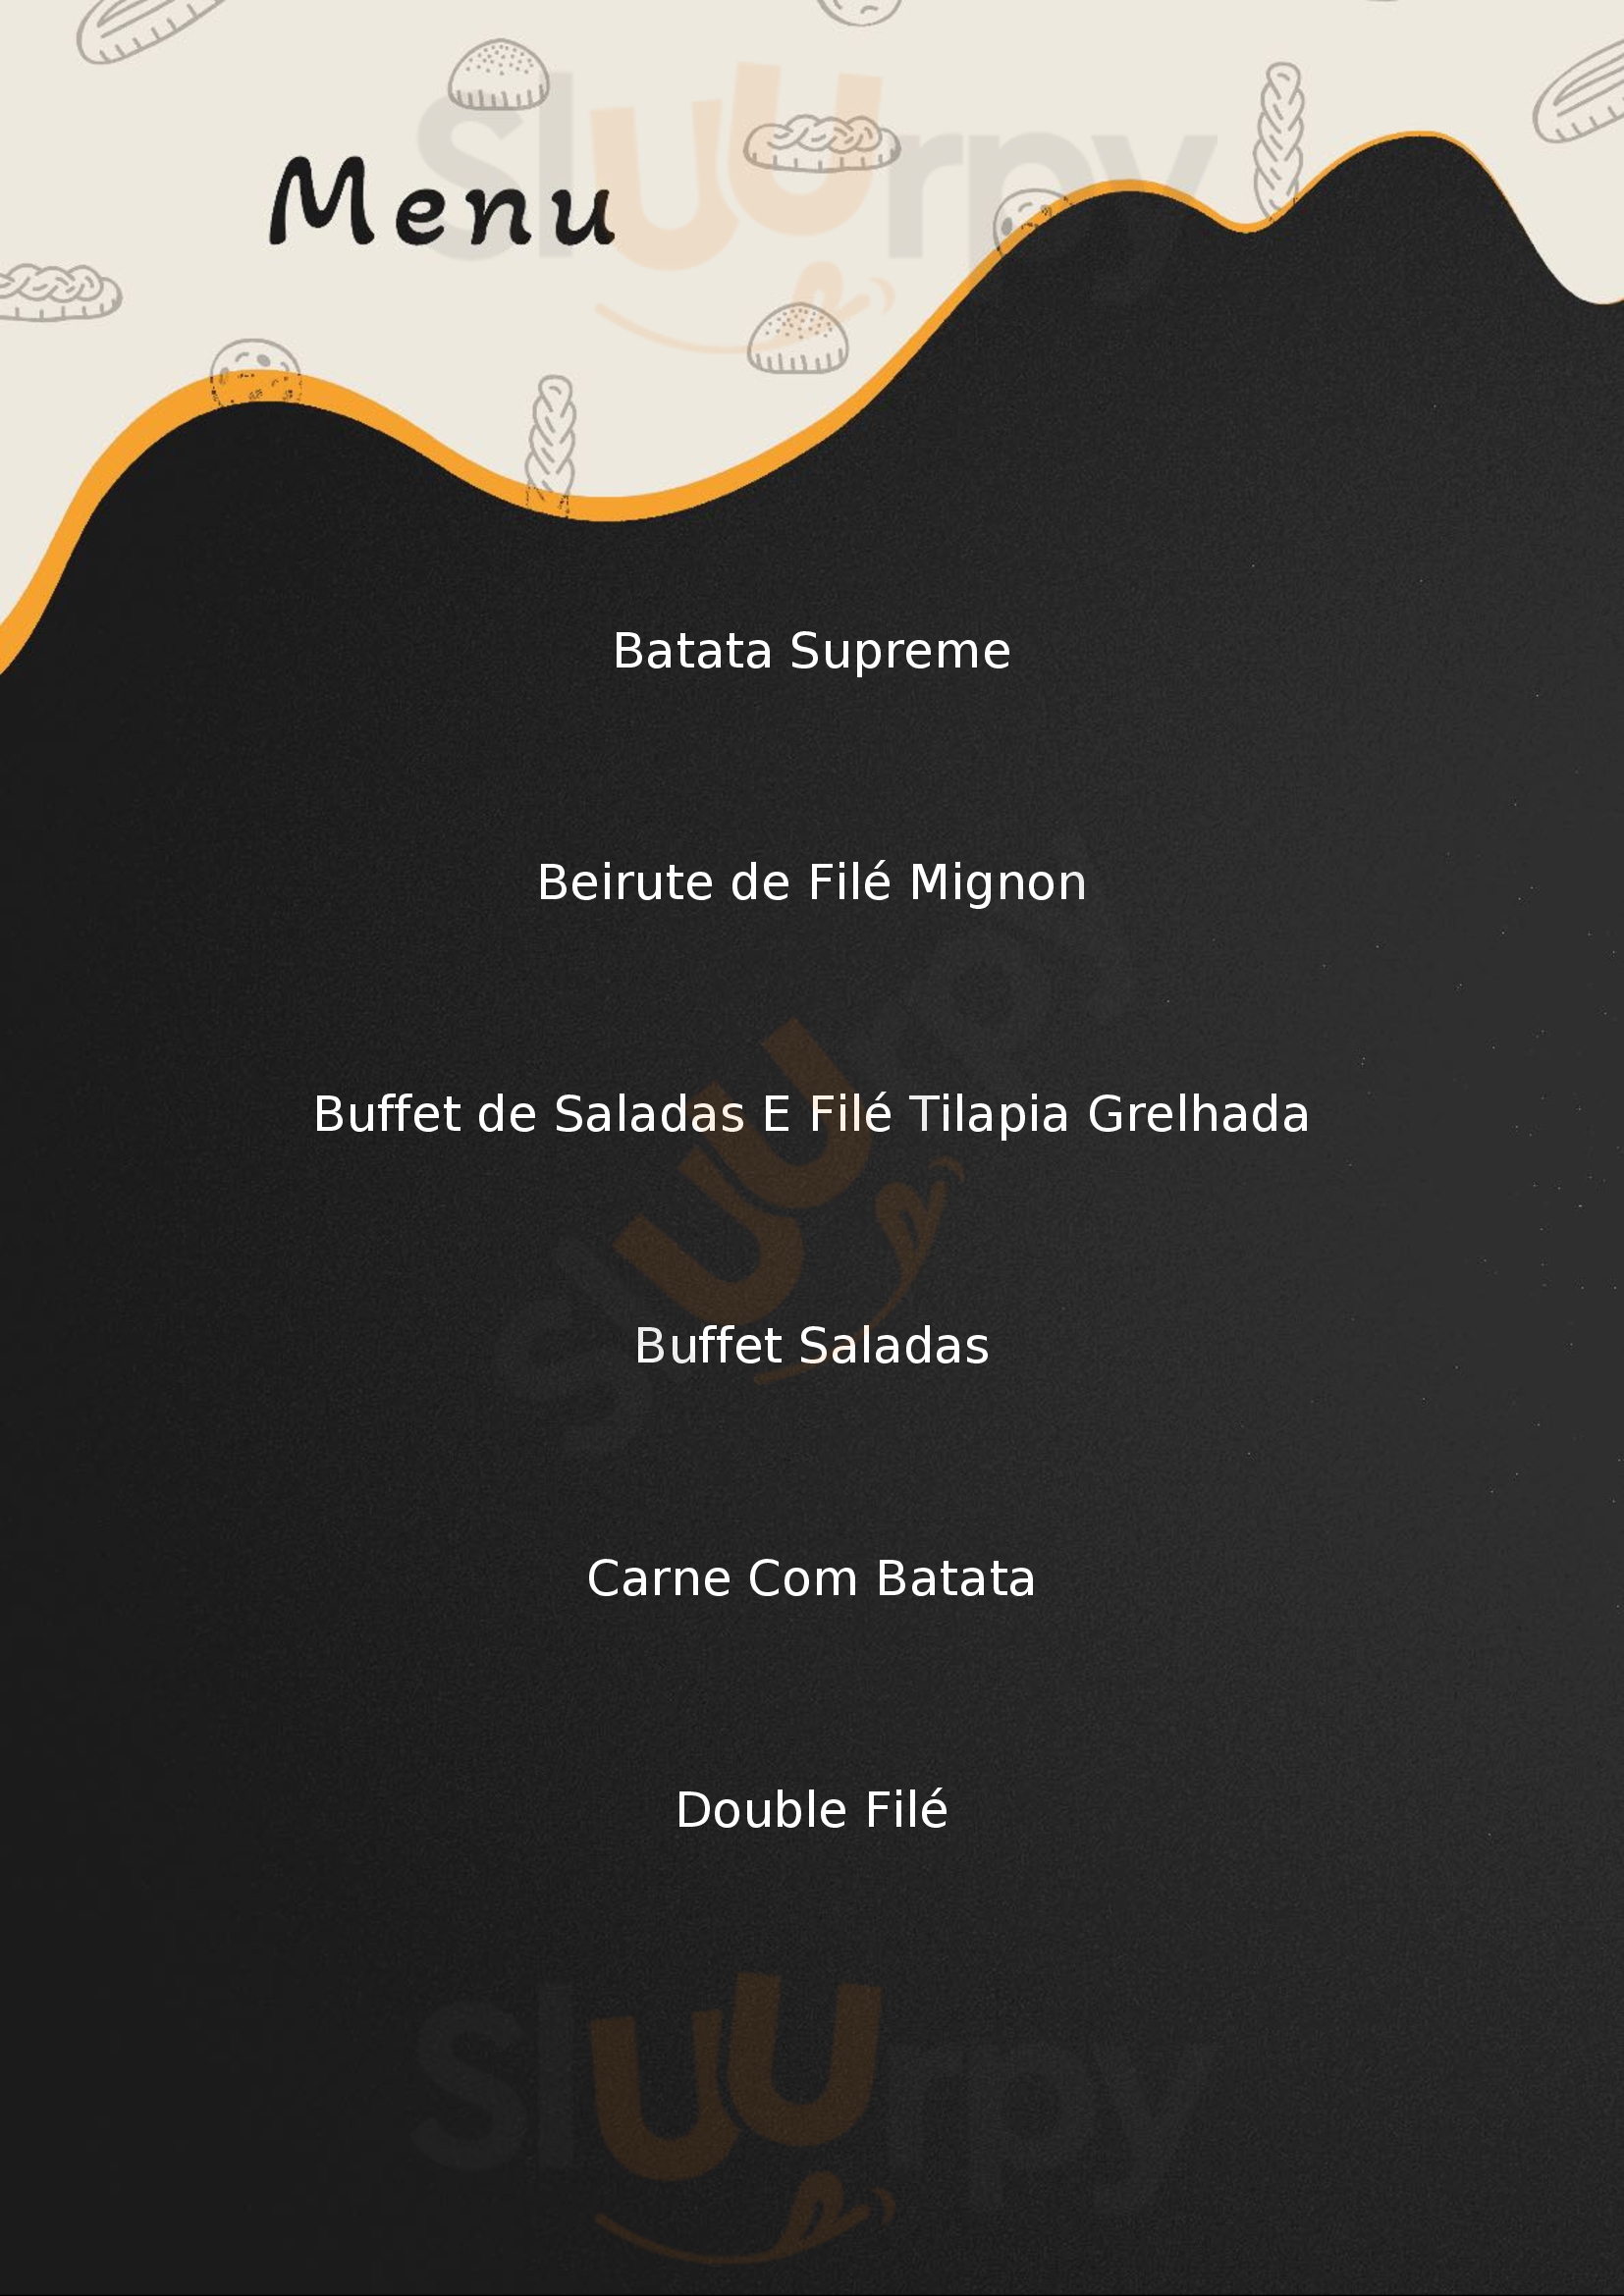 Super Grill Express São Paulo Menu - 1